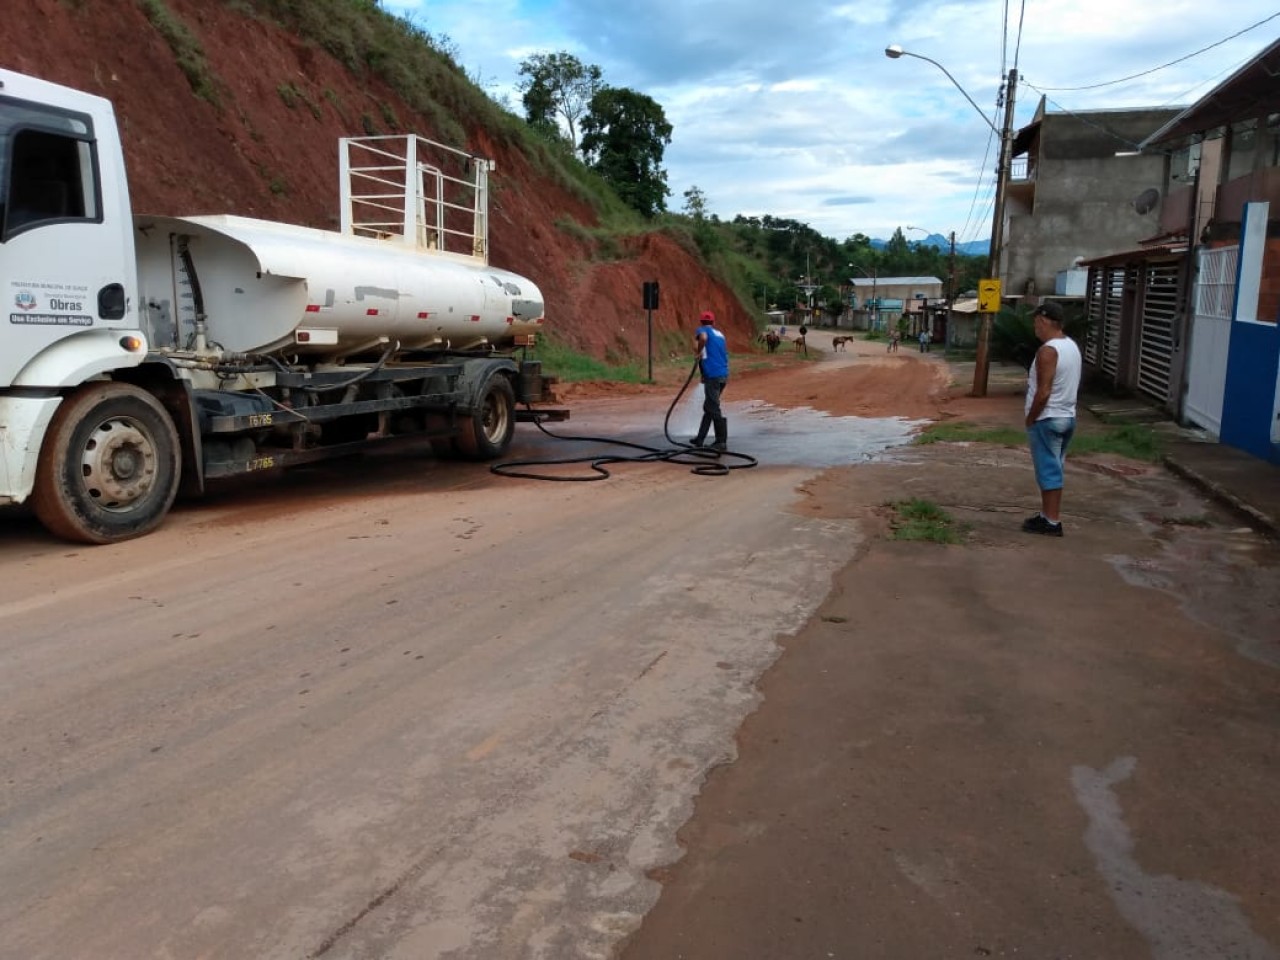 Equipes da Prefeitura de Guaçuí intensificam trabalhos após chuvas